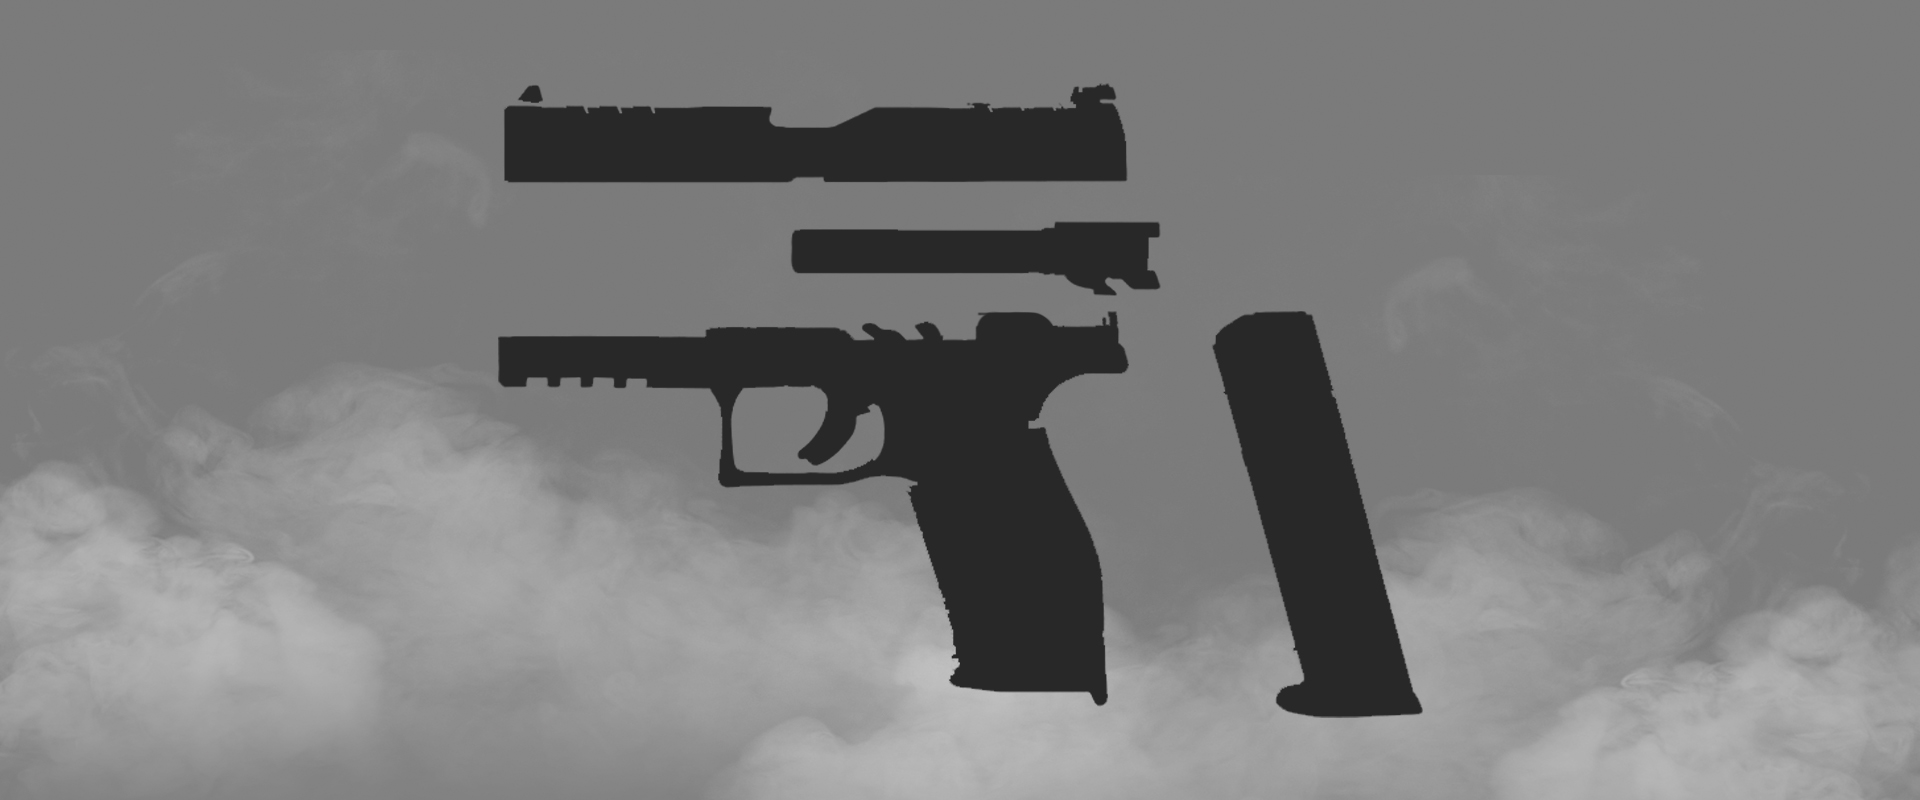 Handgun Parts